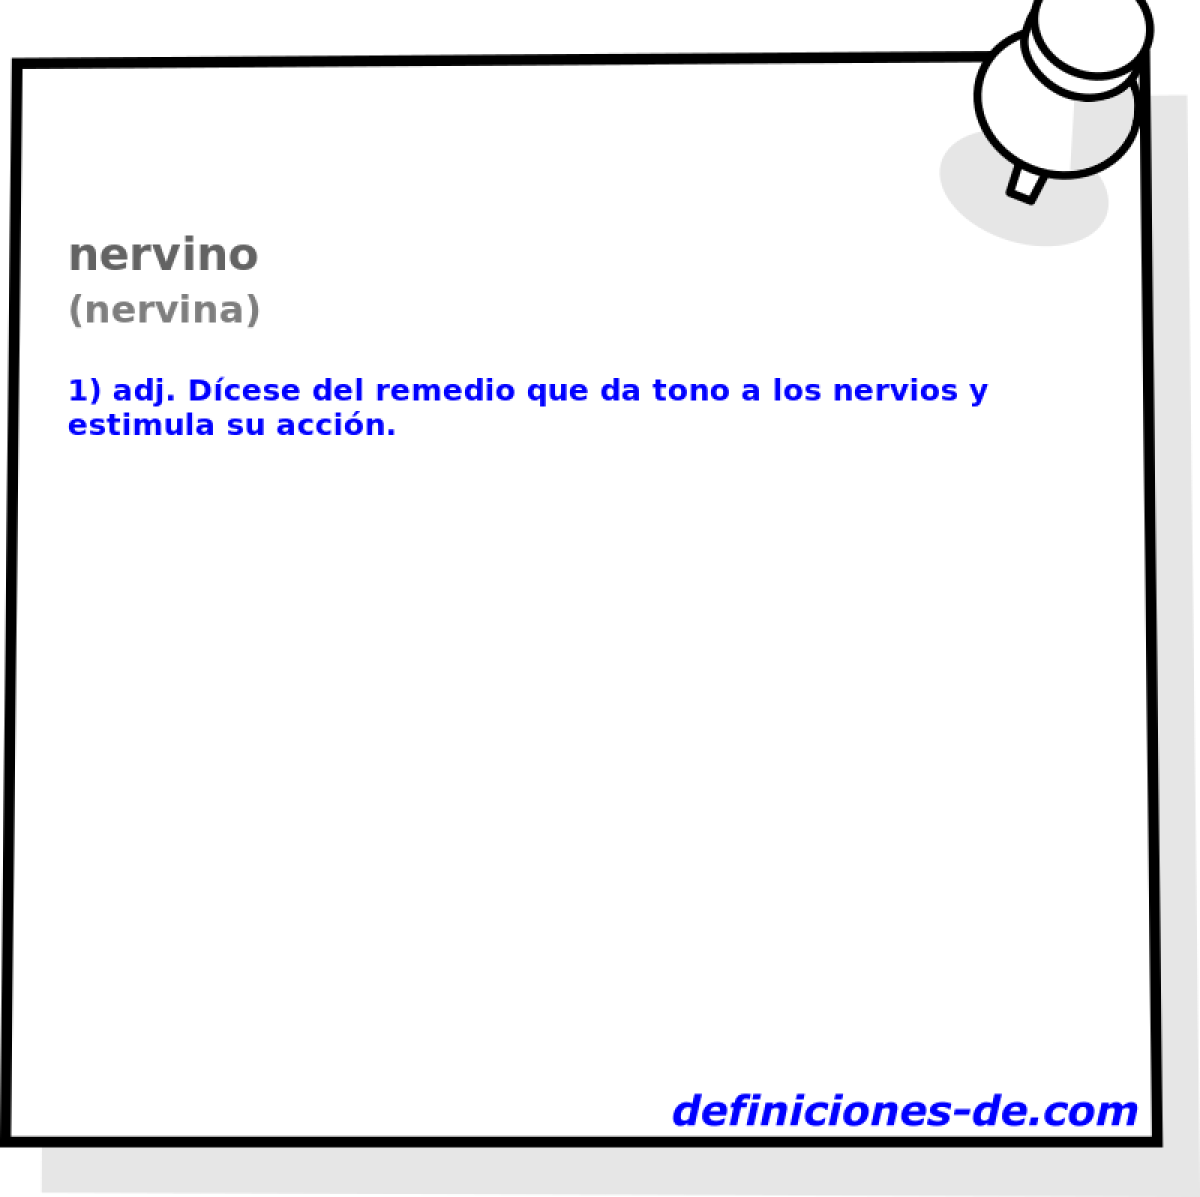 nervino (nervina)